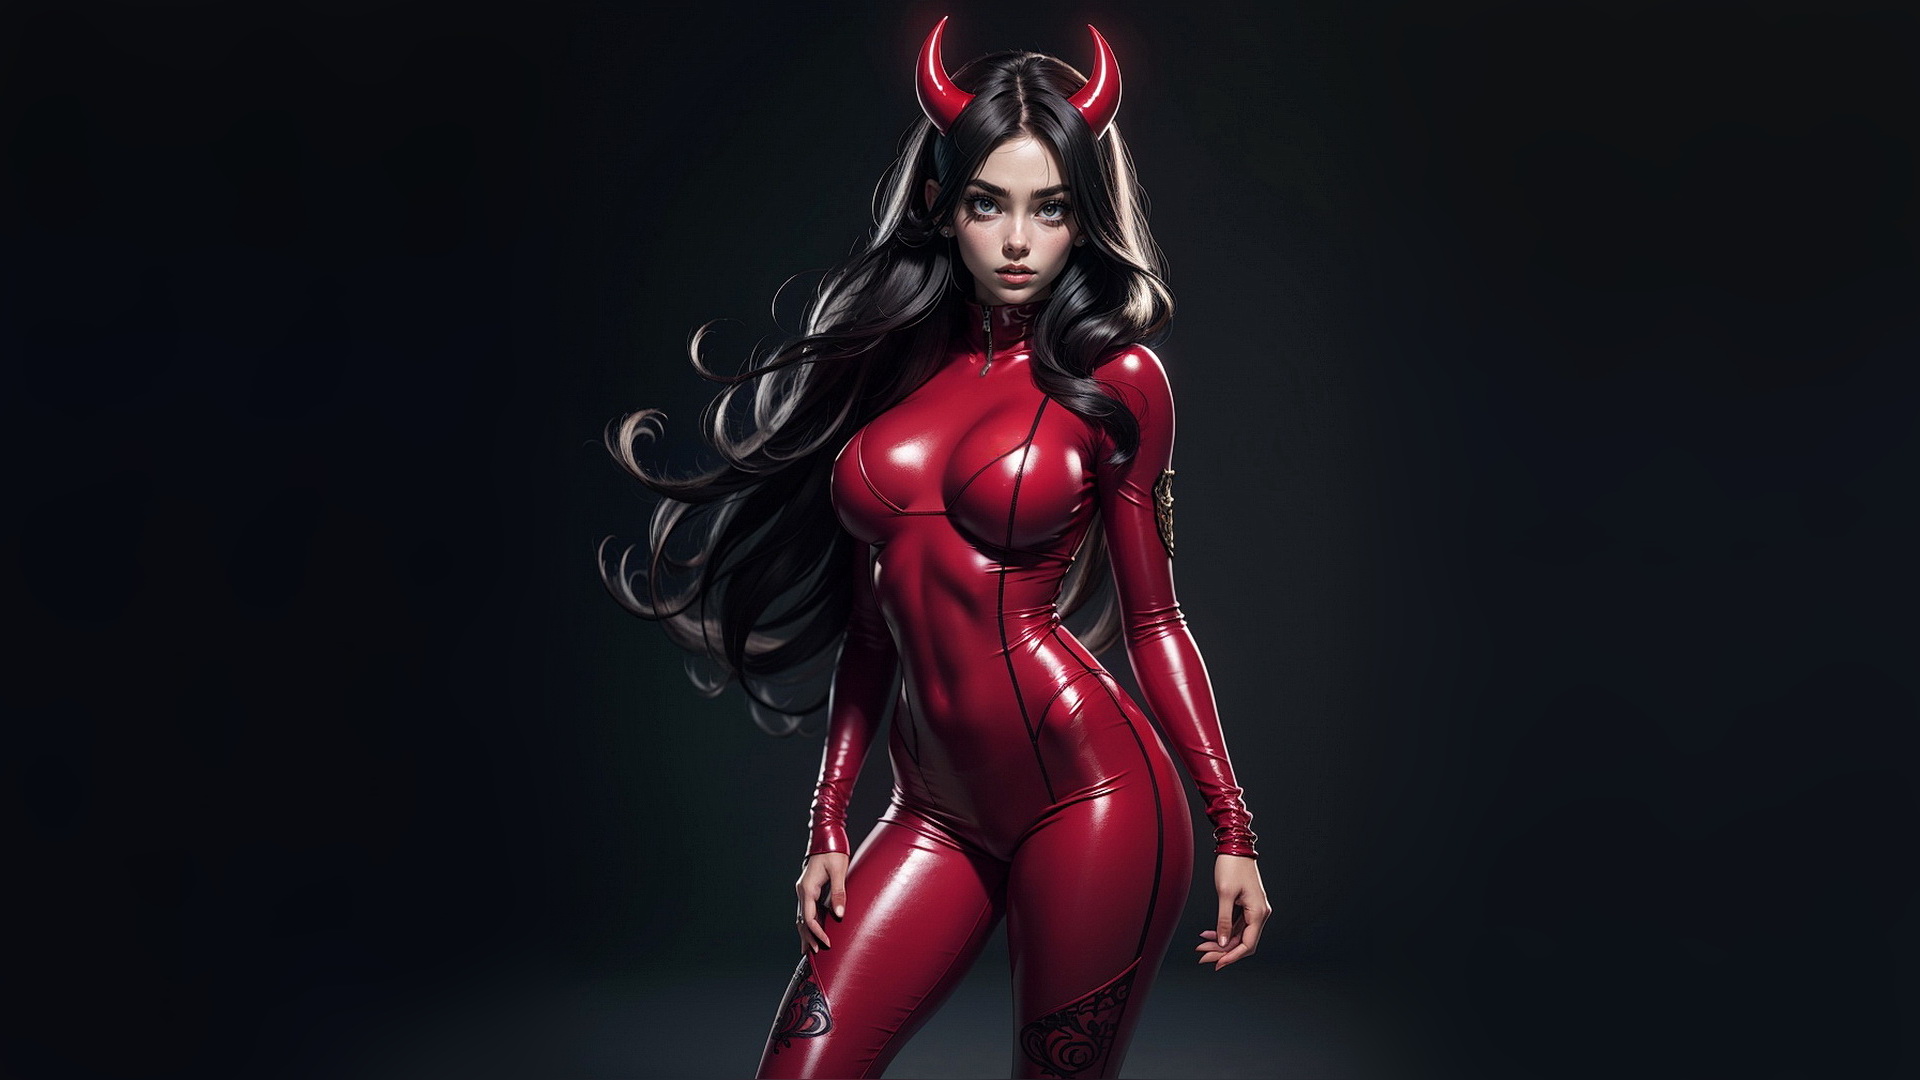 Бесплатное фото Девушка демон с черными волосами и красном костюме на темном фоне